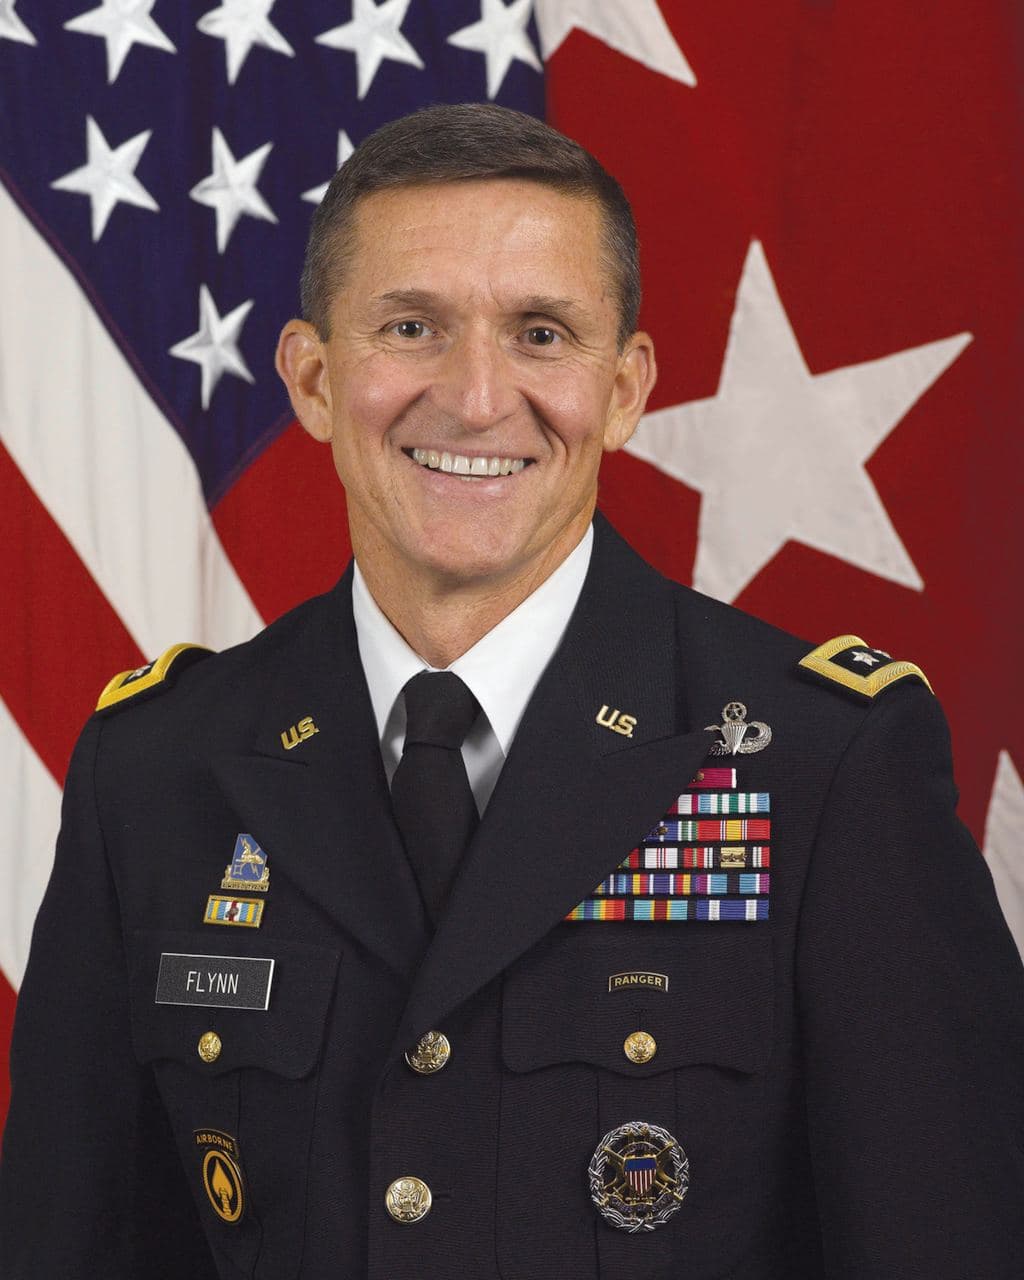 BOOM! General Flynn ist frei!